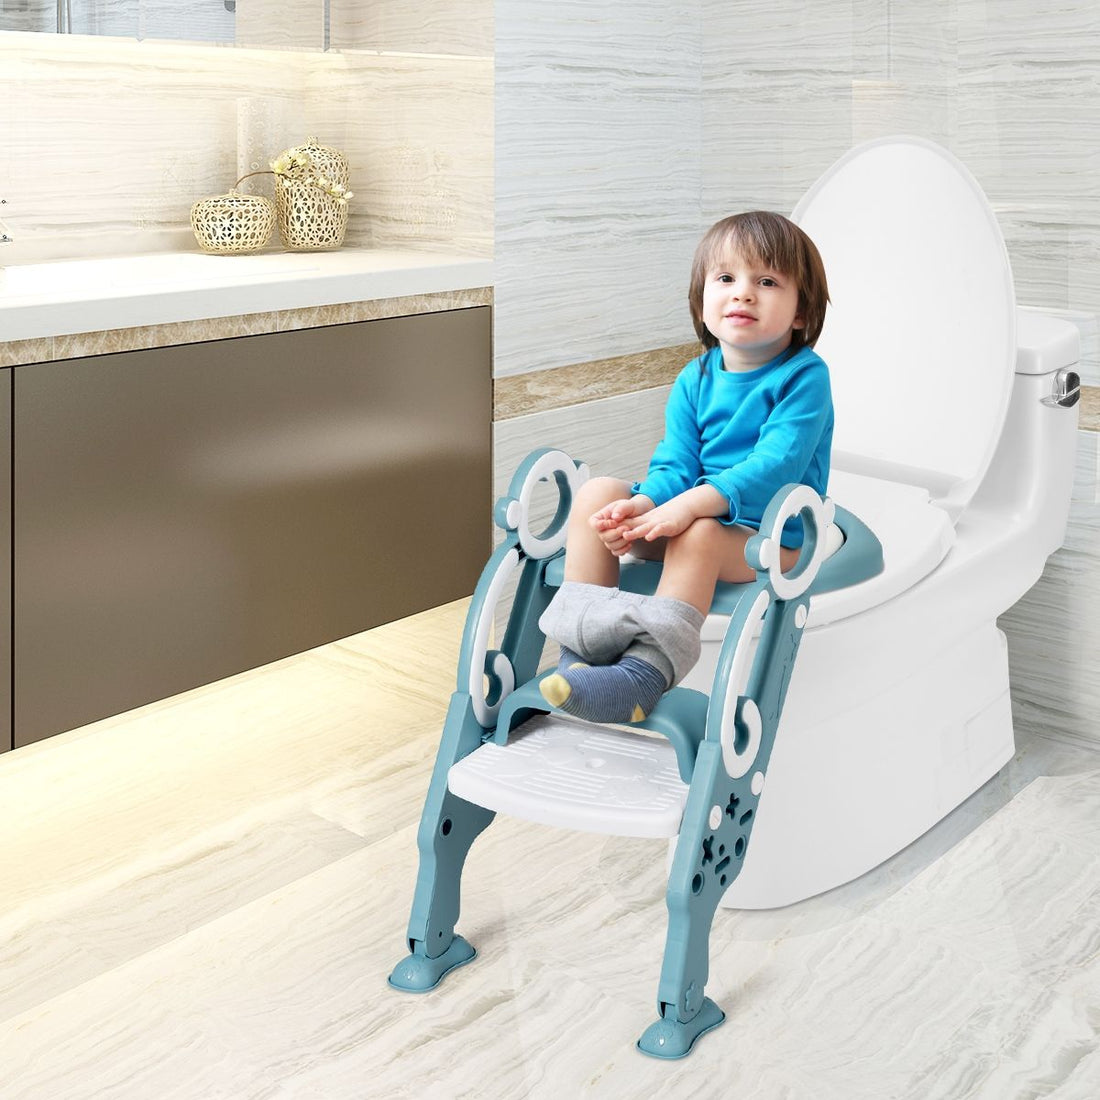 Siège De Toilette Pour Enfants Pliable Et Hauteur Réglable En PP&amp;PVC Convient Aux Enfants 1-8 Ans Vert